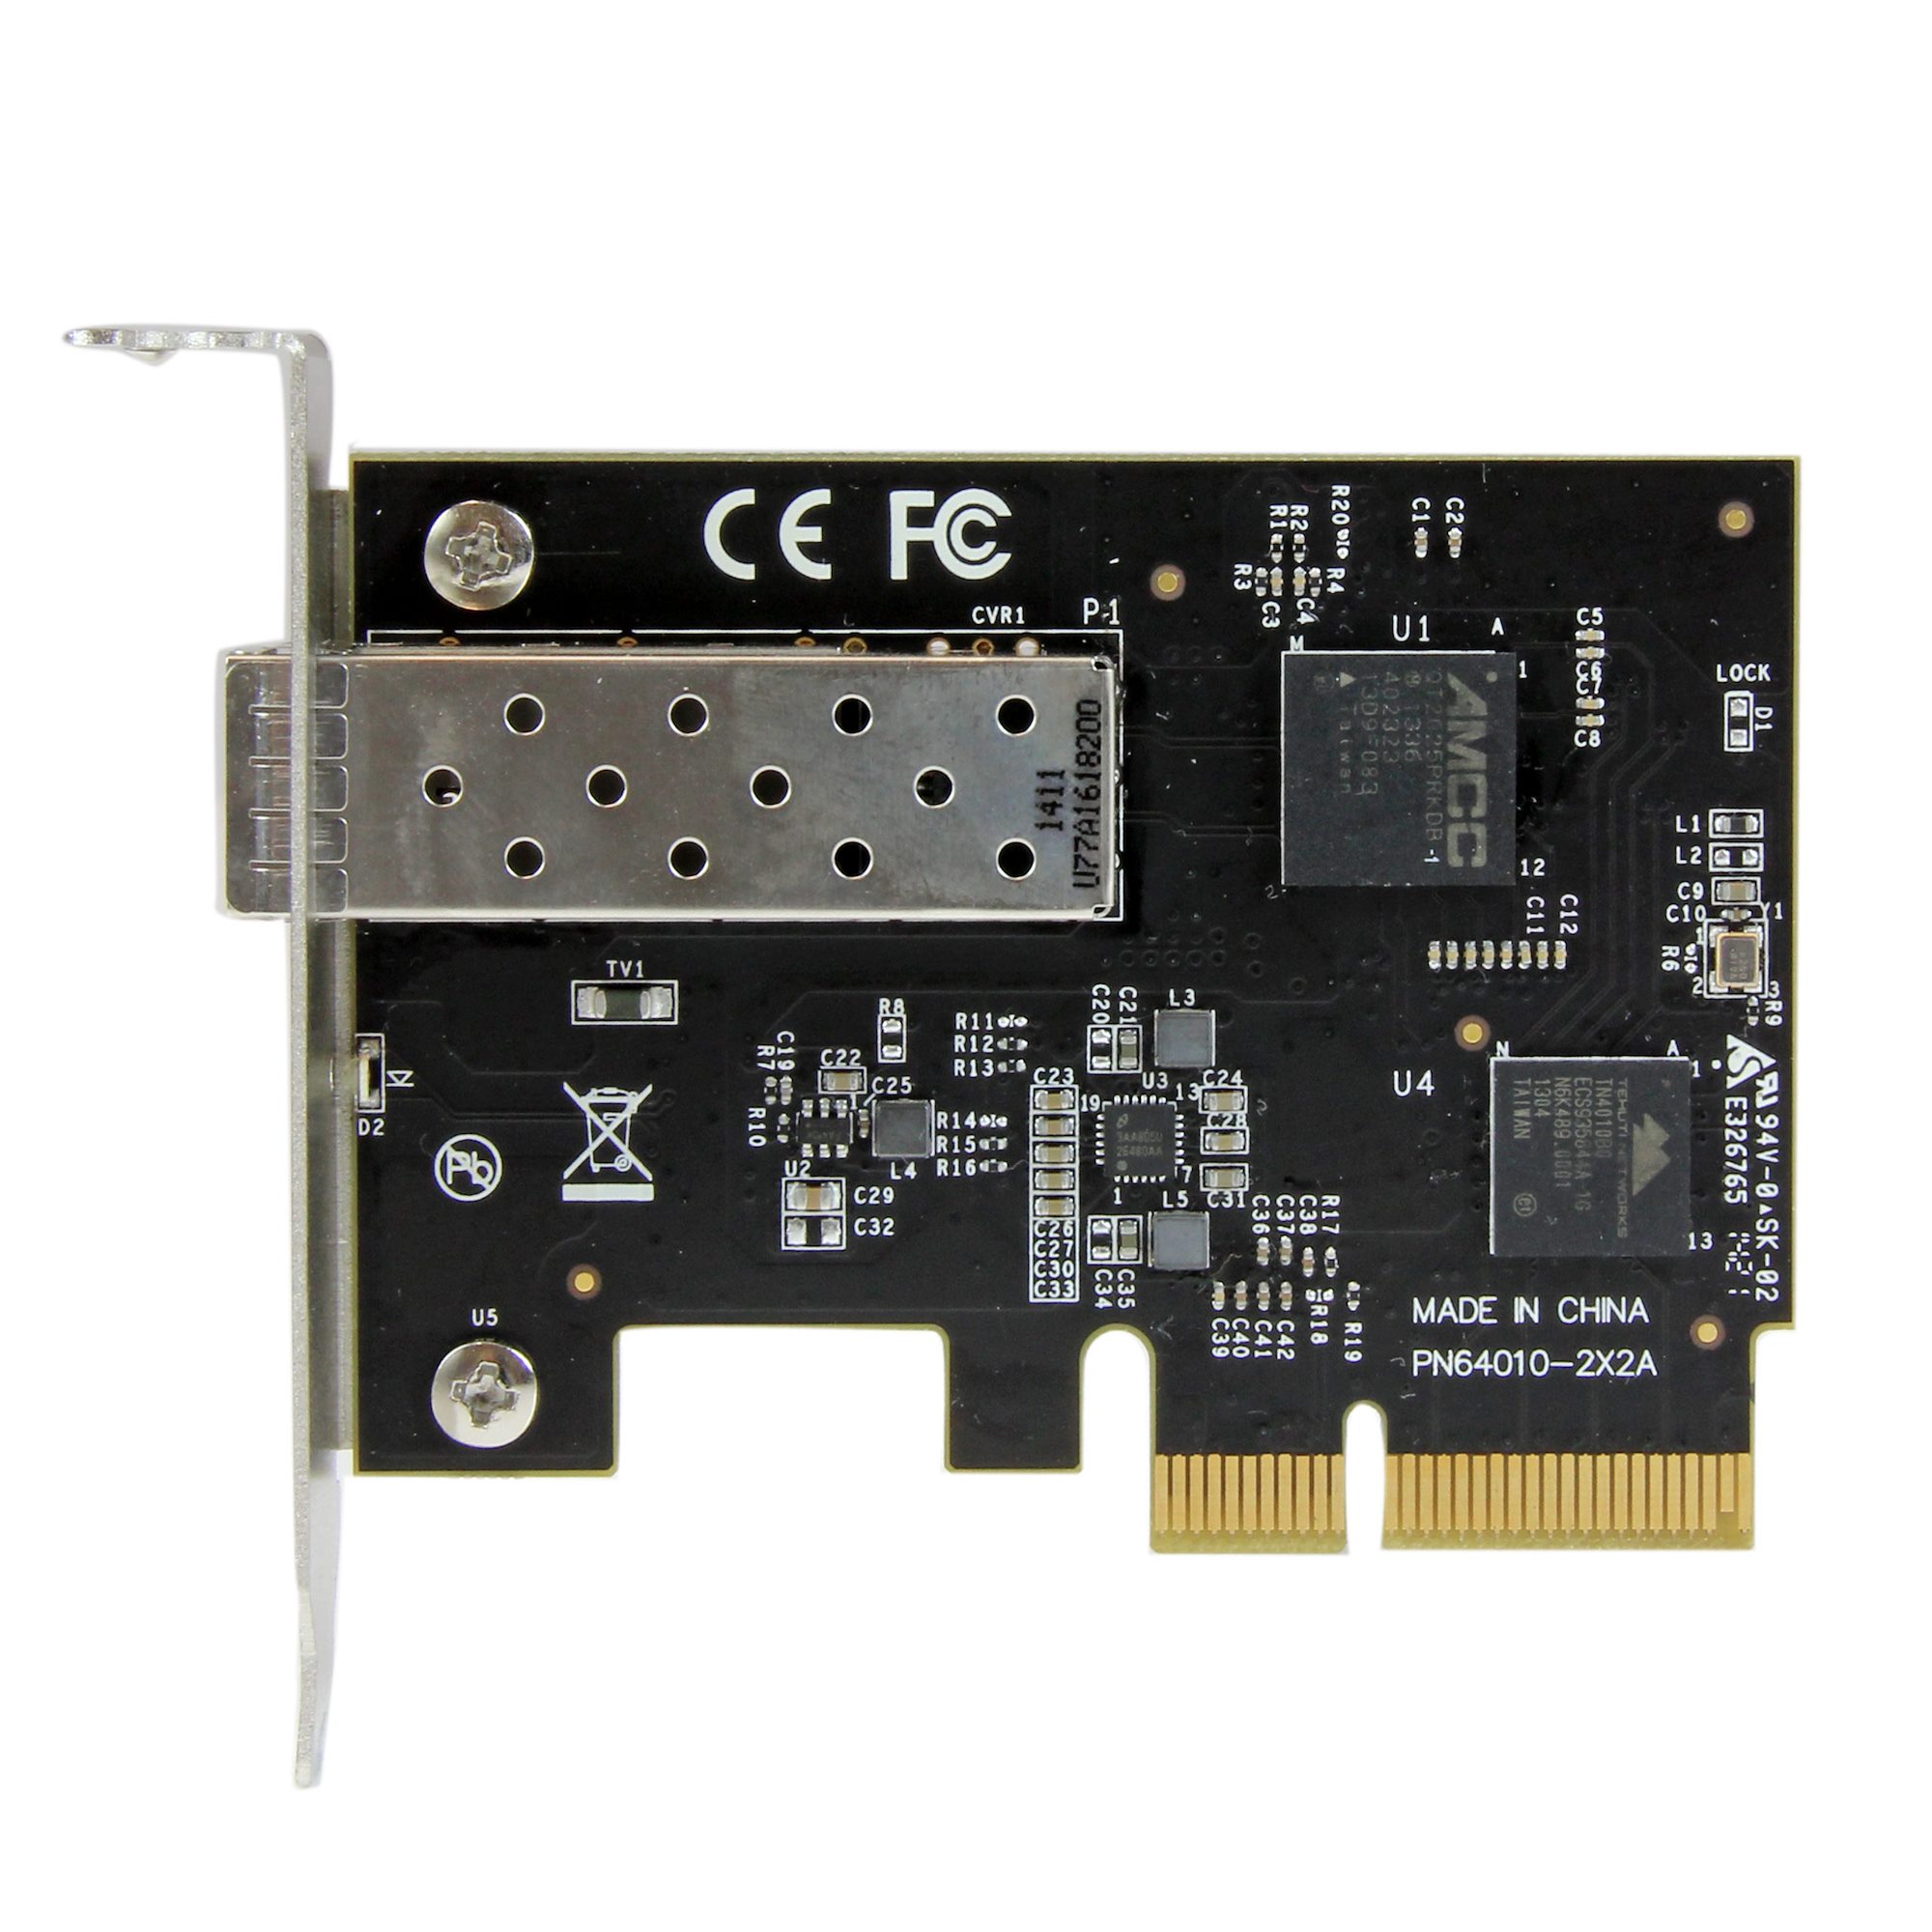 PCI Express接続SFP+対応10GbE 光ファイバーネットワークカード - ネットワークアダプタ カード | 日本